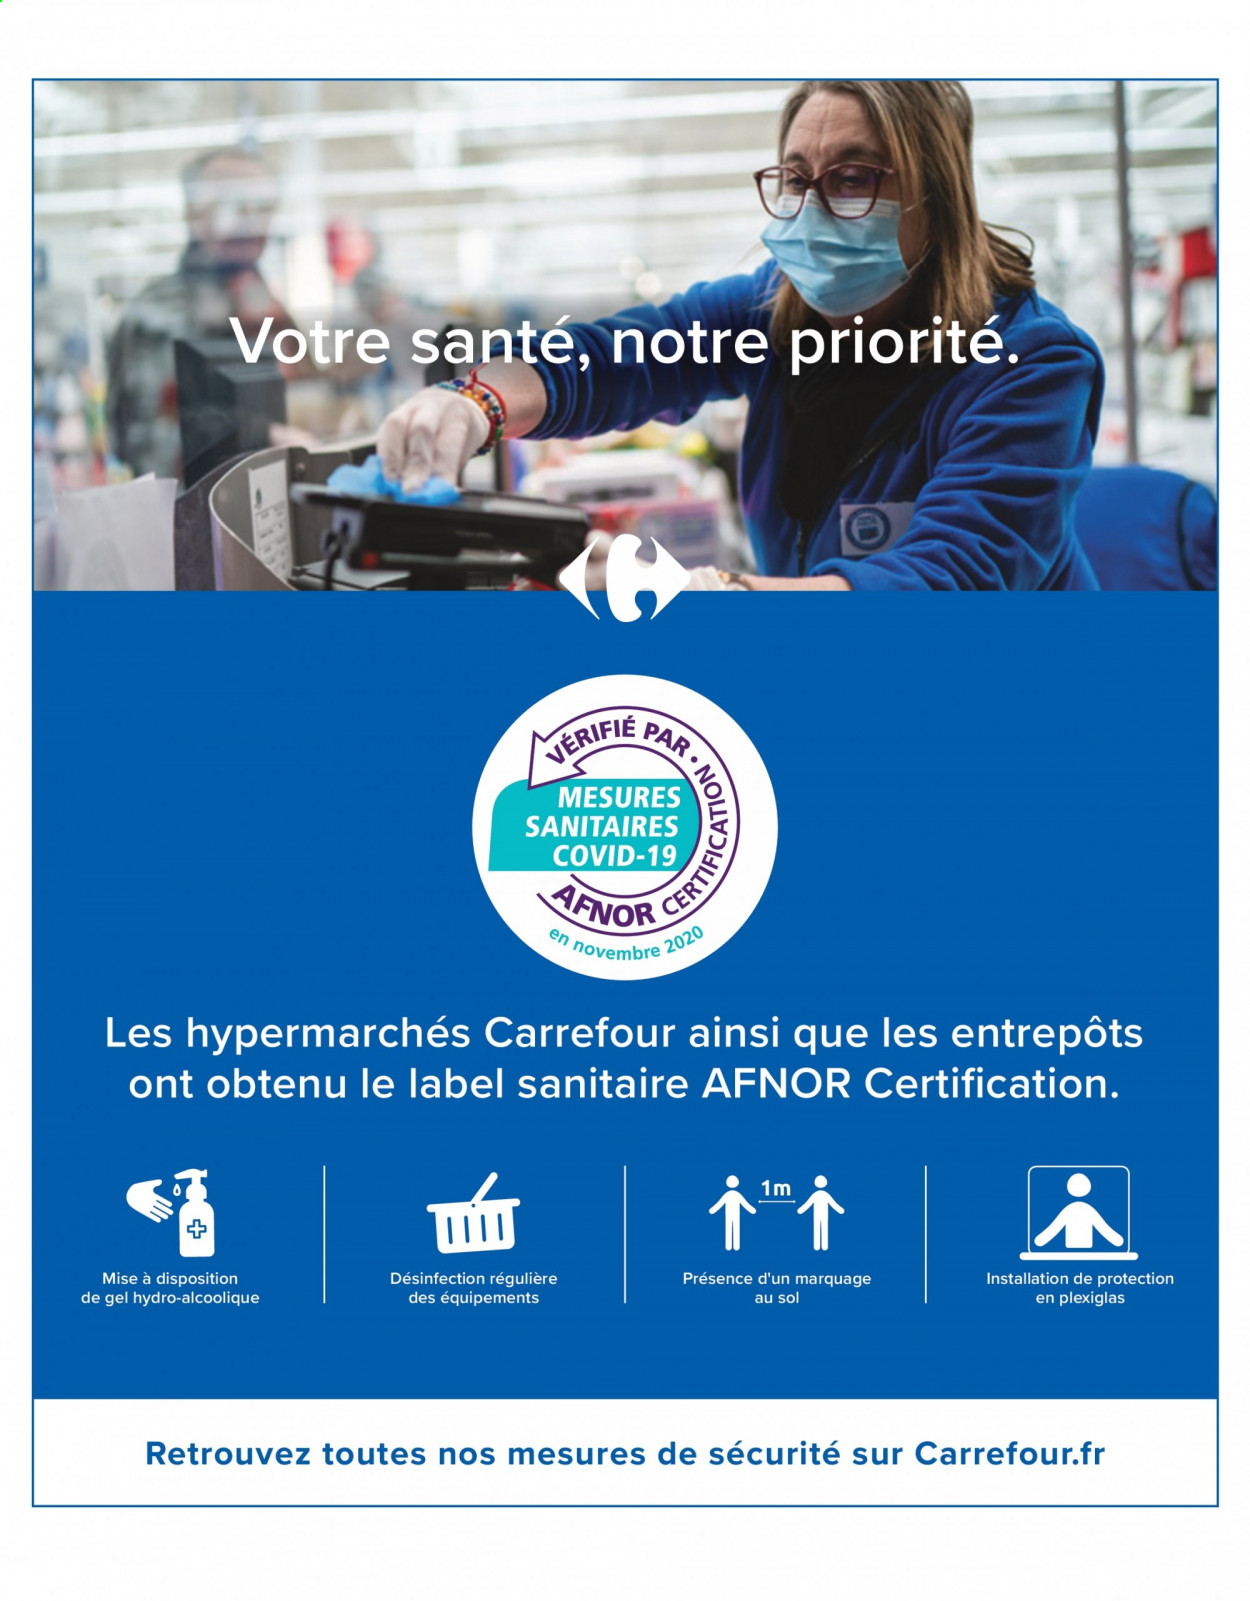 Catalogue Carrefour Hypermarchés - 04.05.2021 - 10.05.2021. 